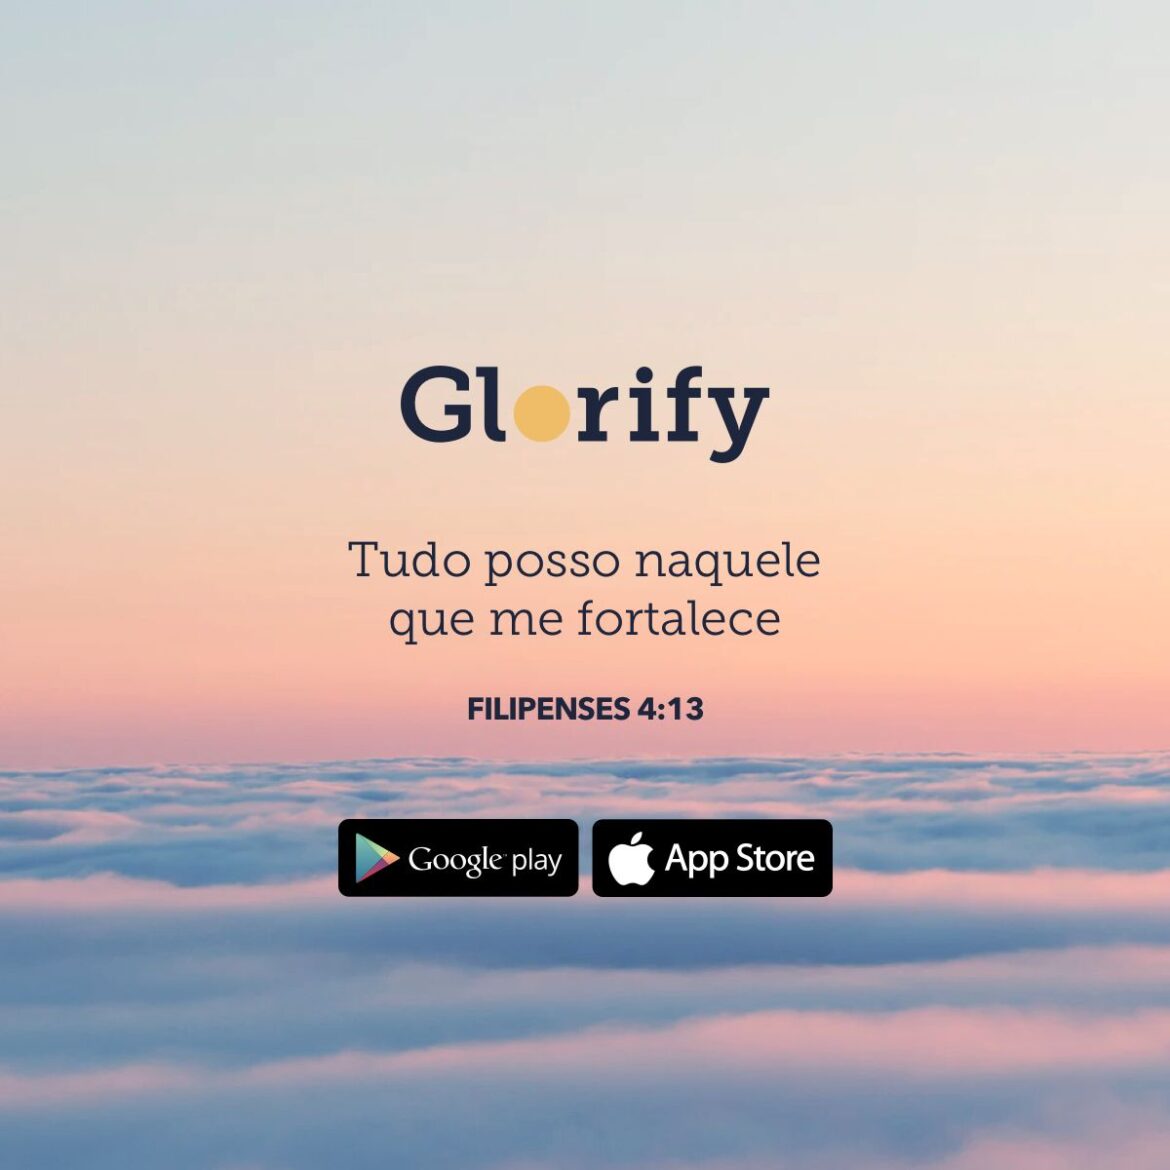 Glorify alcança dez milhões de downloads no mundo